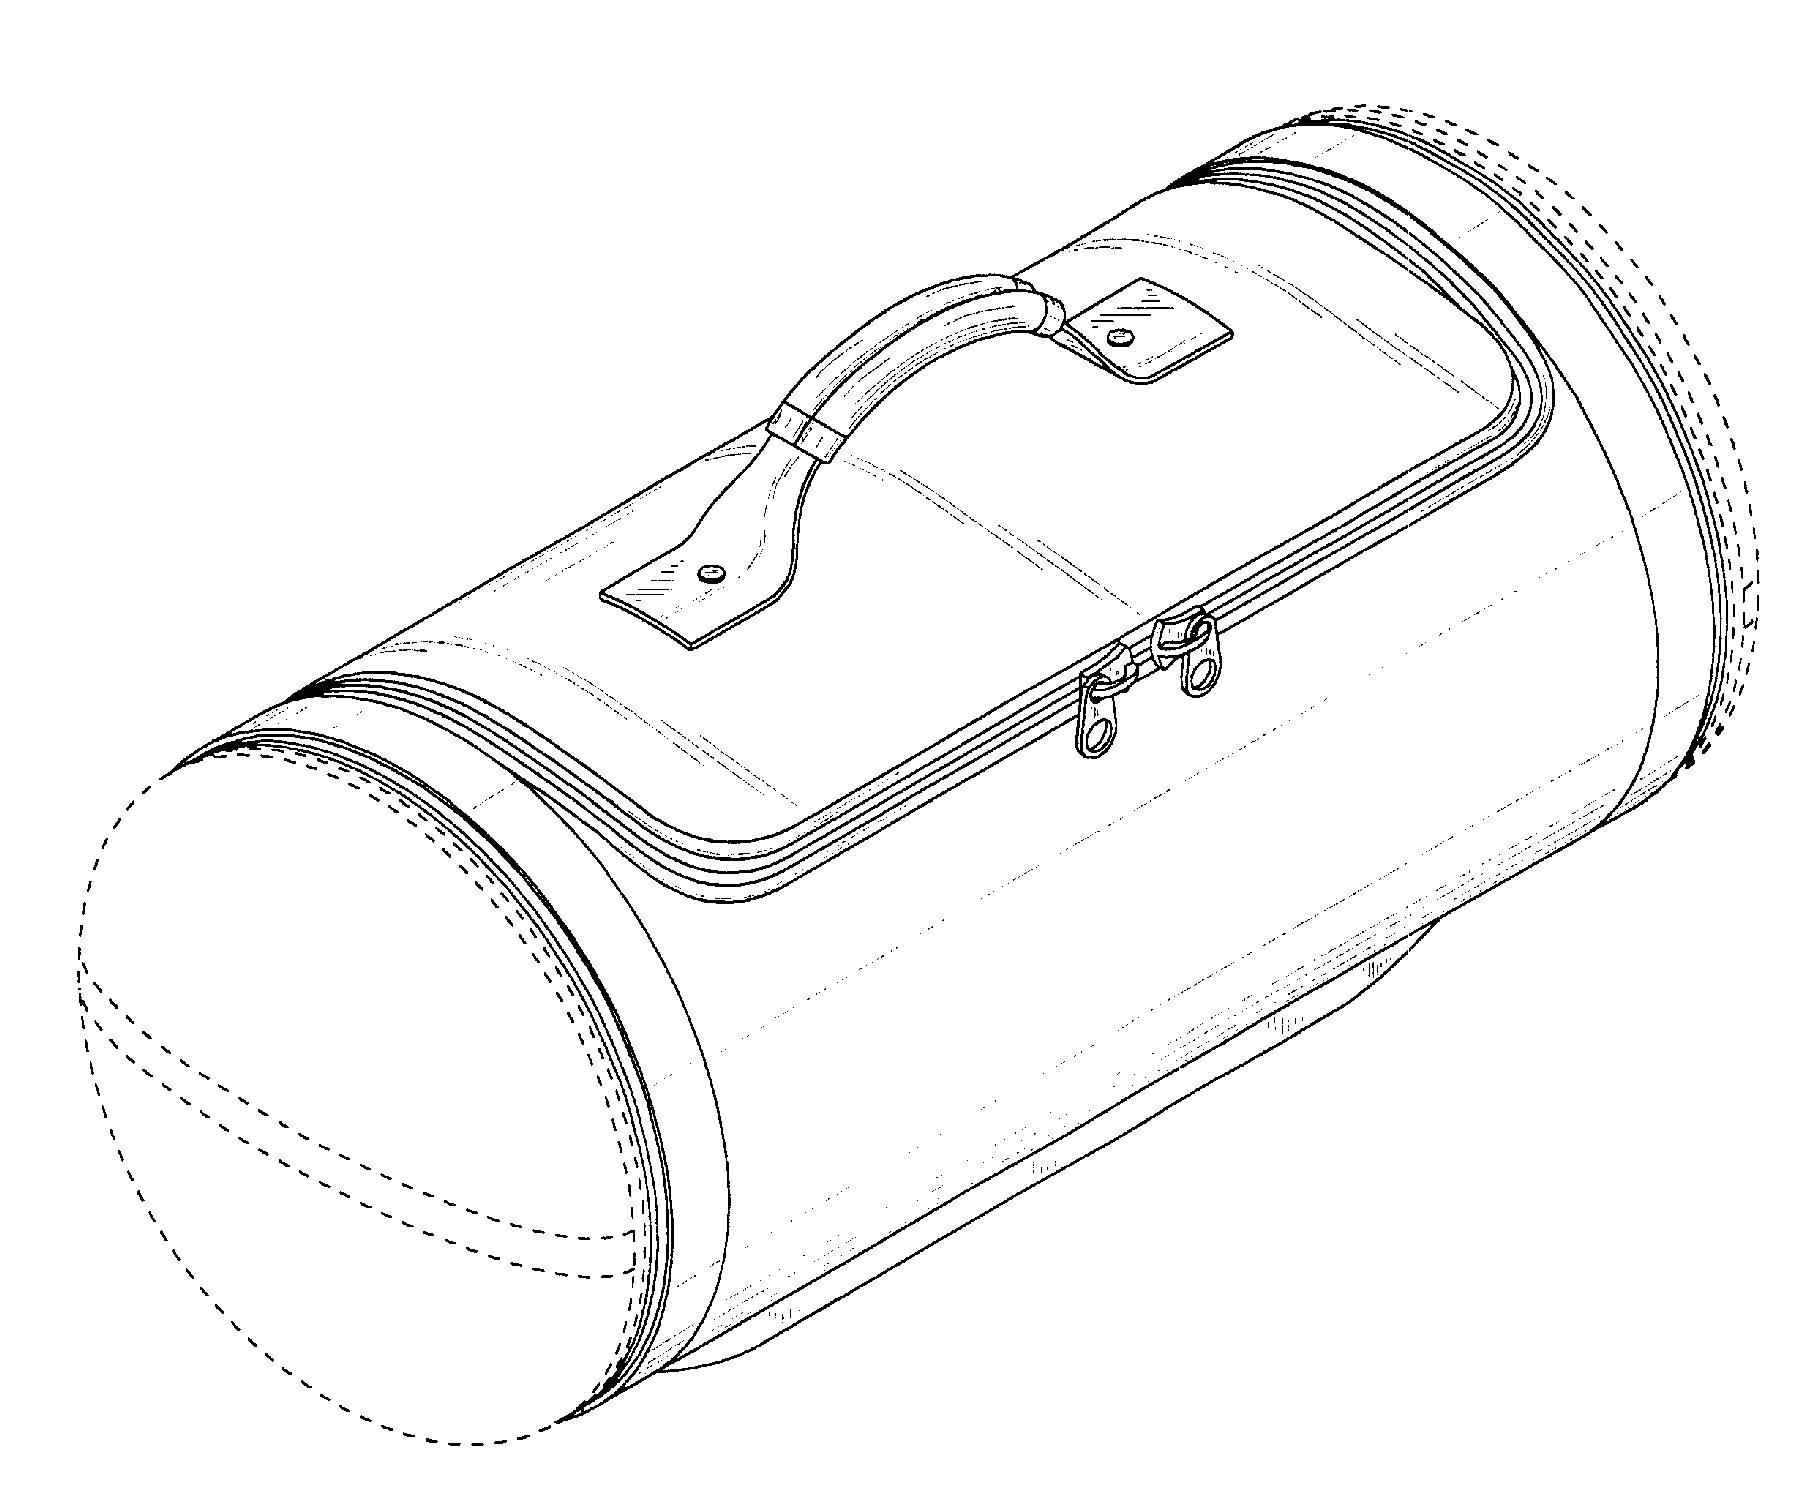 example of a handbag design